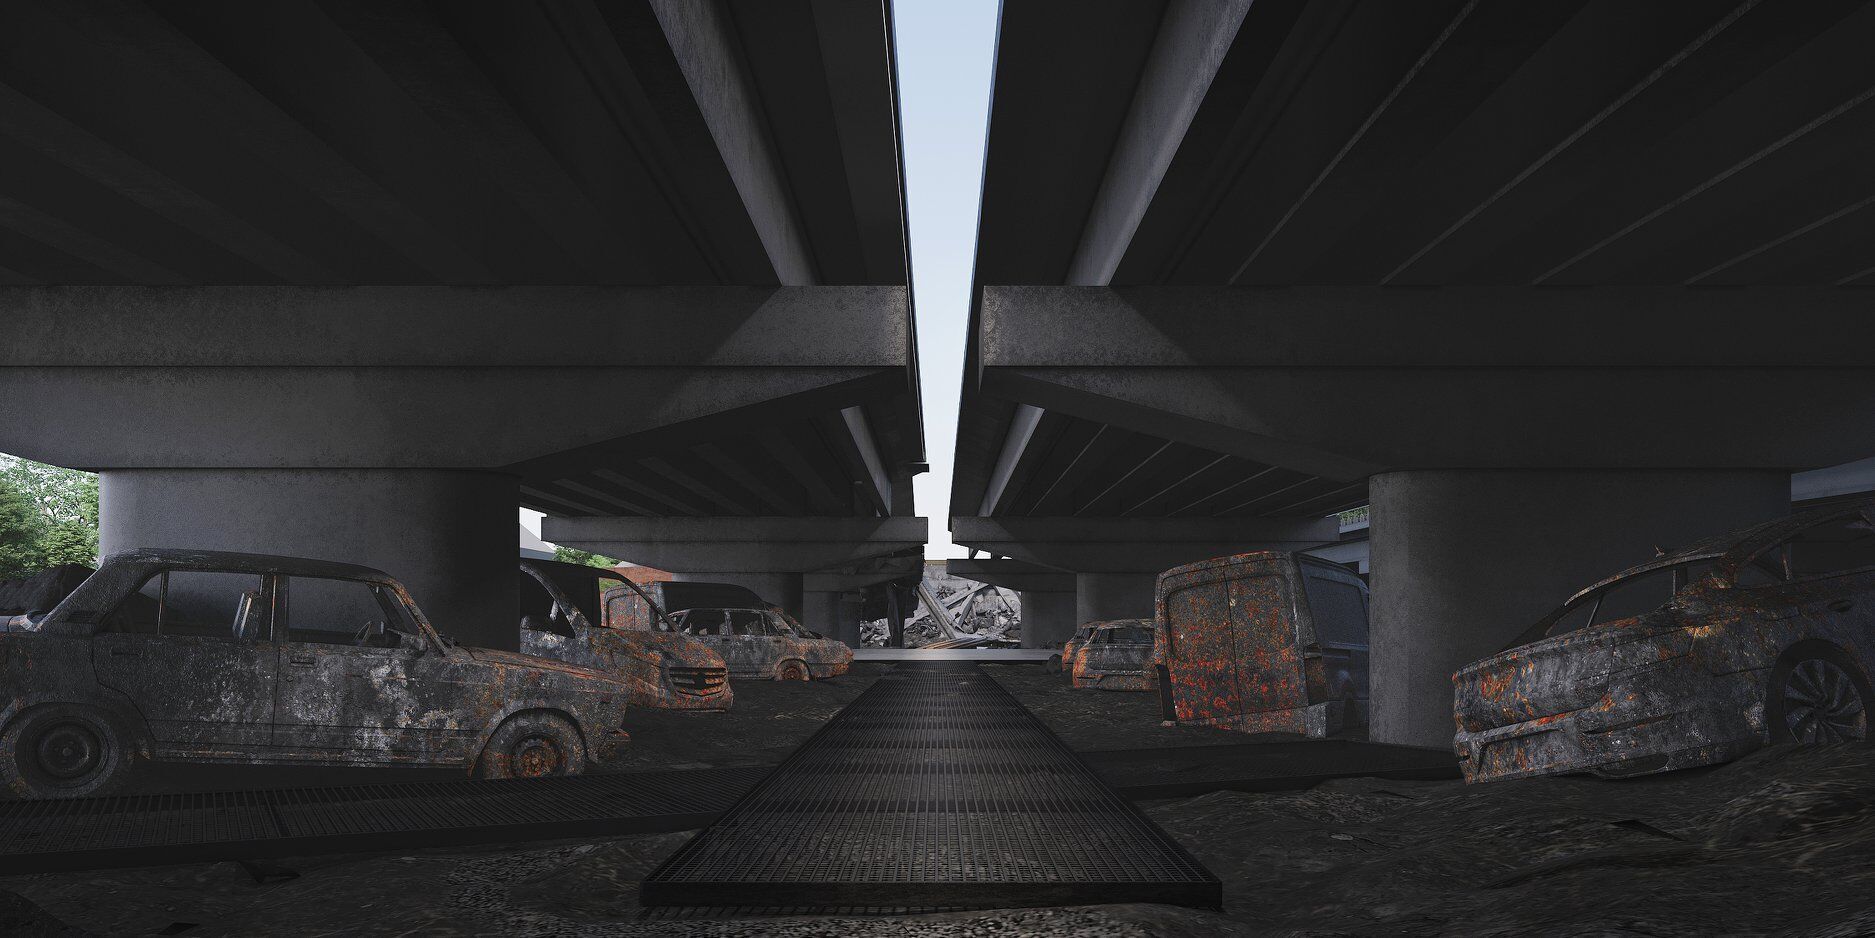 Архітектори представили концепцію меморіального комплексу навколо зруйнованого мосту біля Ірпеня. Фото